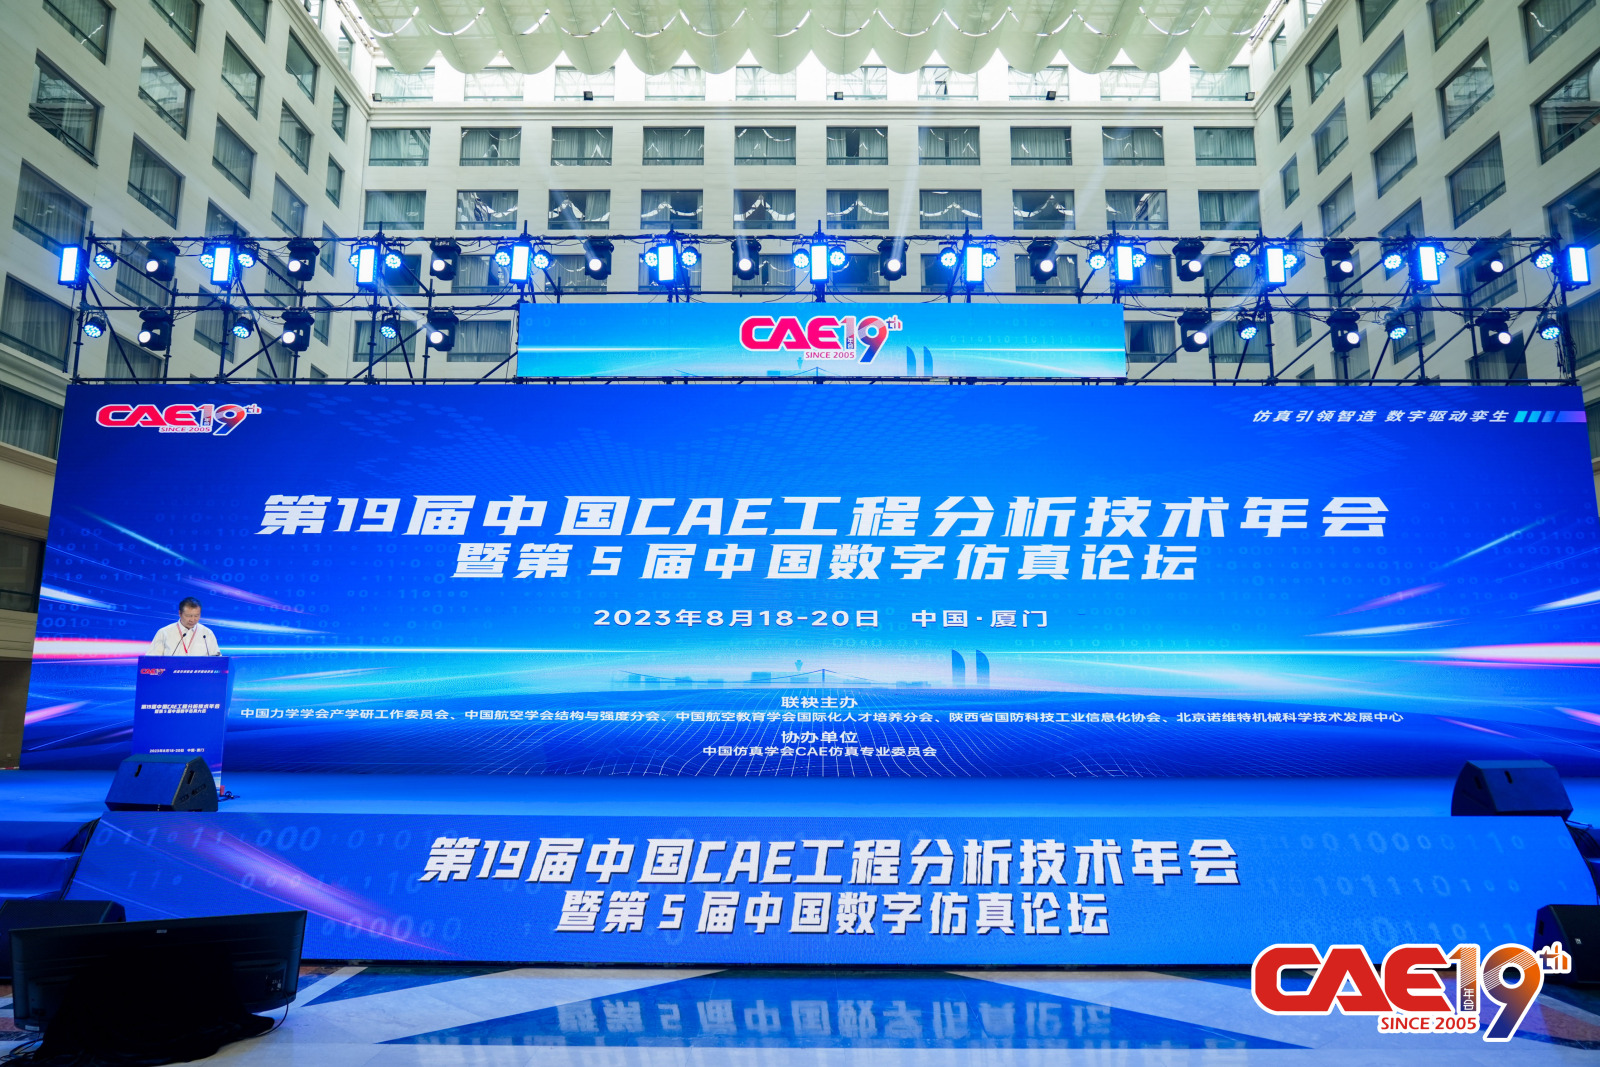 一睹“沣”采 | 十沣在第19届中国CAE工程技术分析年会上表现亮眼